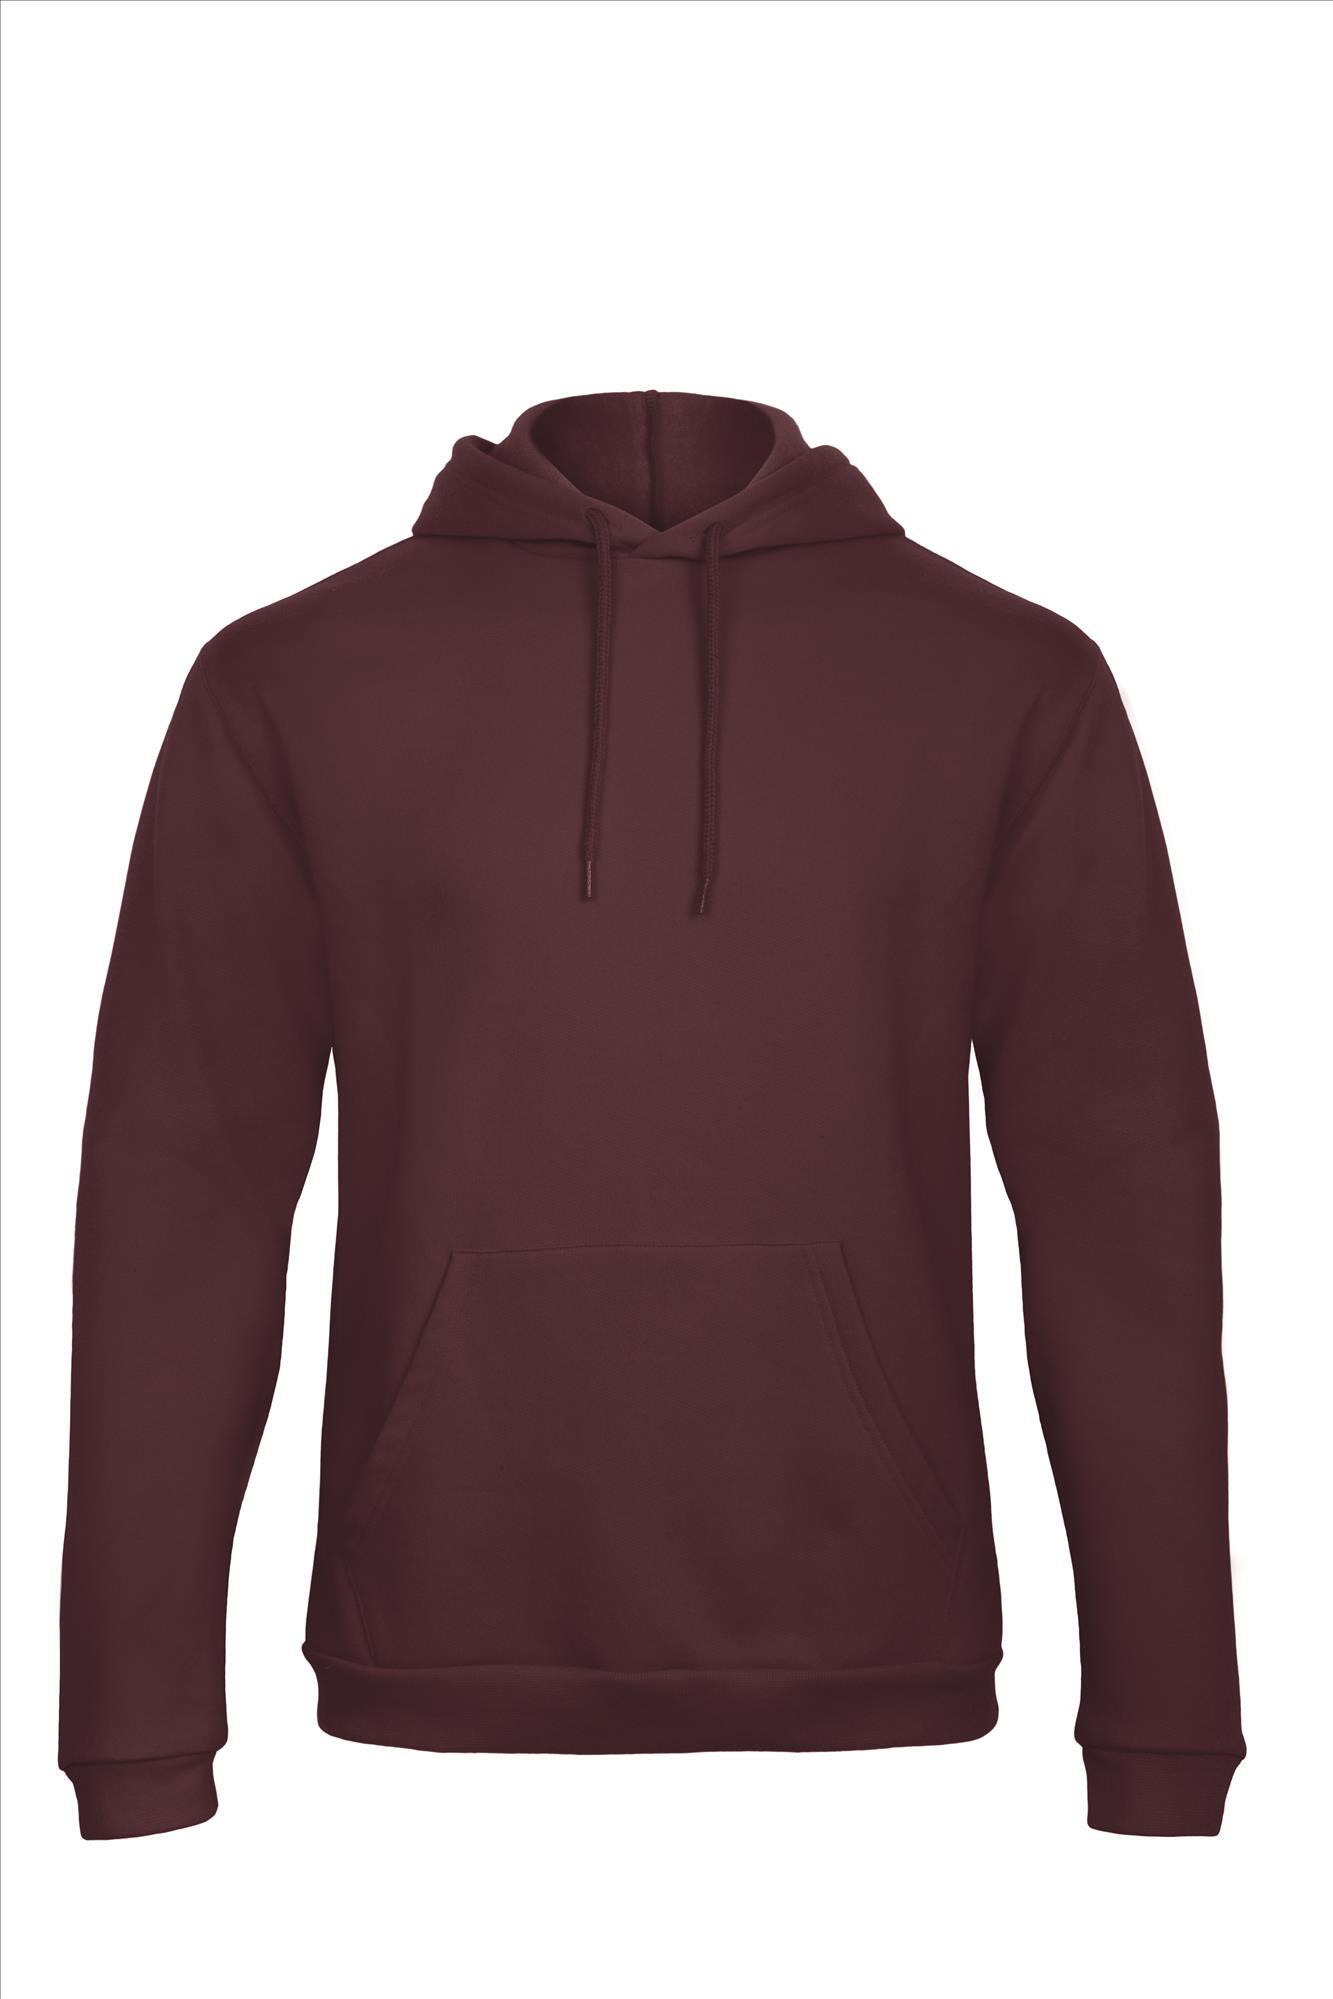 Burgundy rode hoodie Sweatshirt Unisex met capuchon heren bedrukbaar